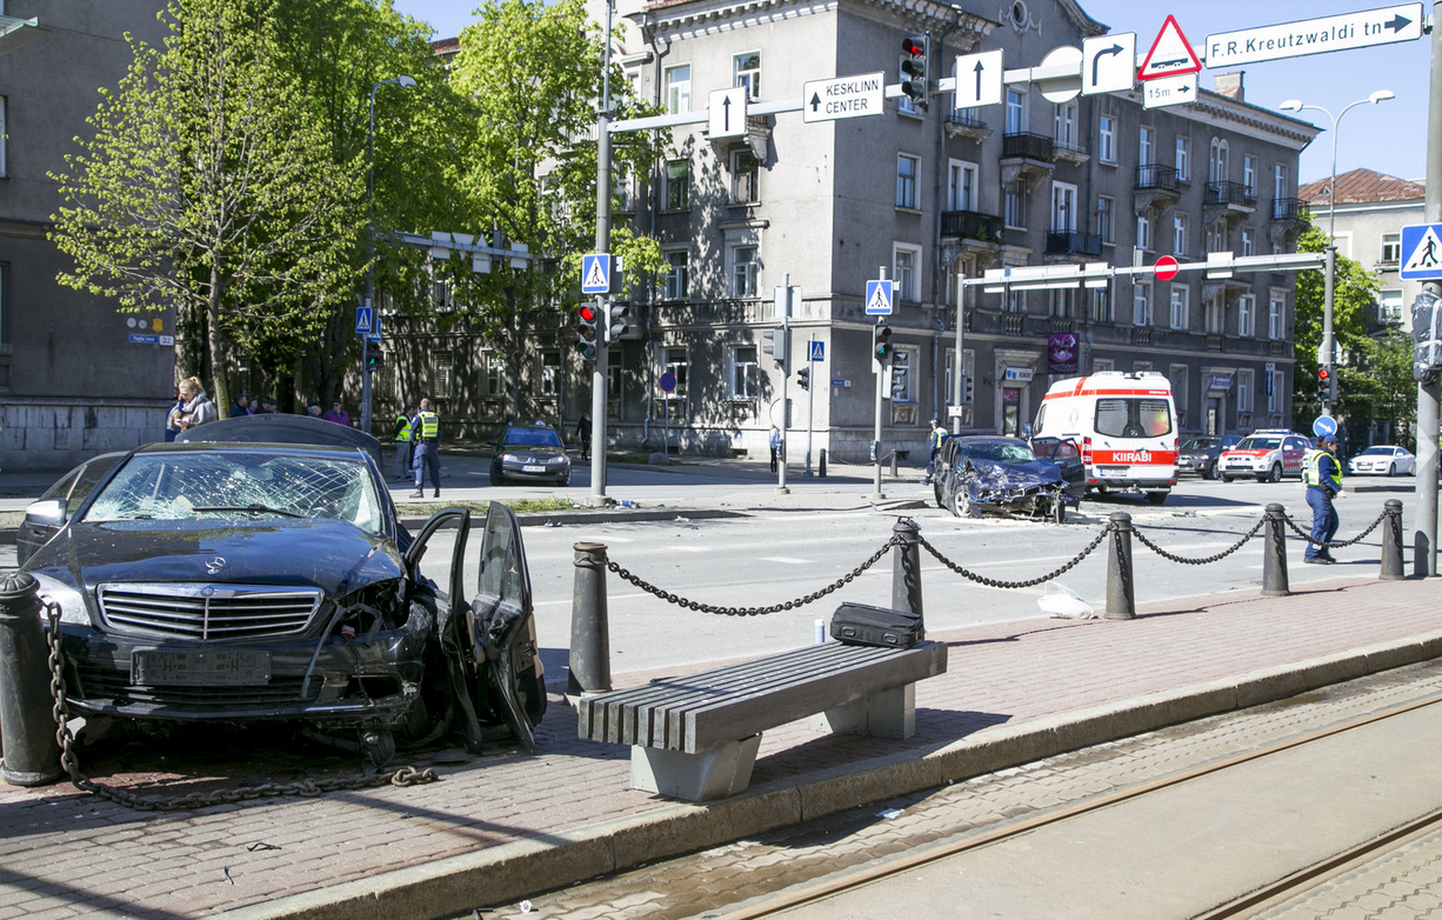 Möödunud kevadel juhtus Tallinnas suur avarii, kus sai vigastada 14 inimest. Ekspertiis tuvastas, et õnnetuse põhjustanud noormees oli joobes.